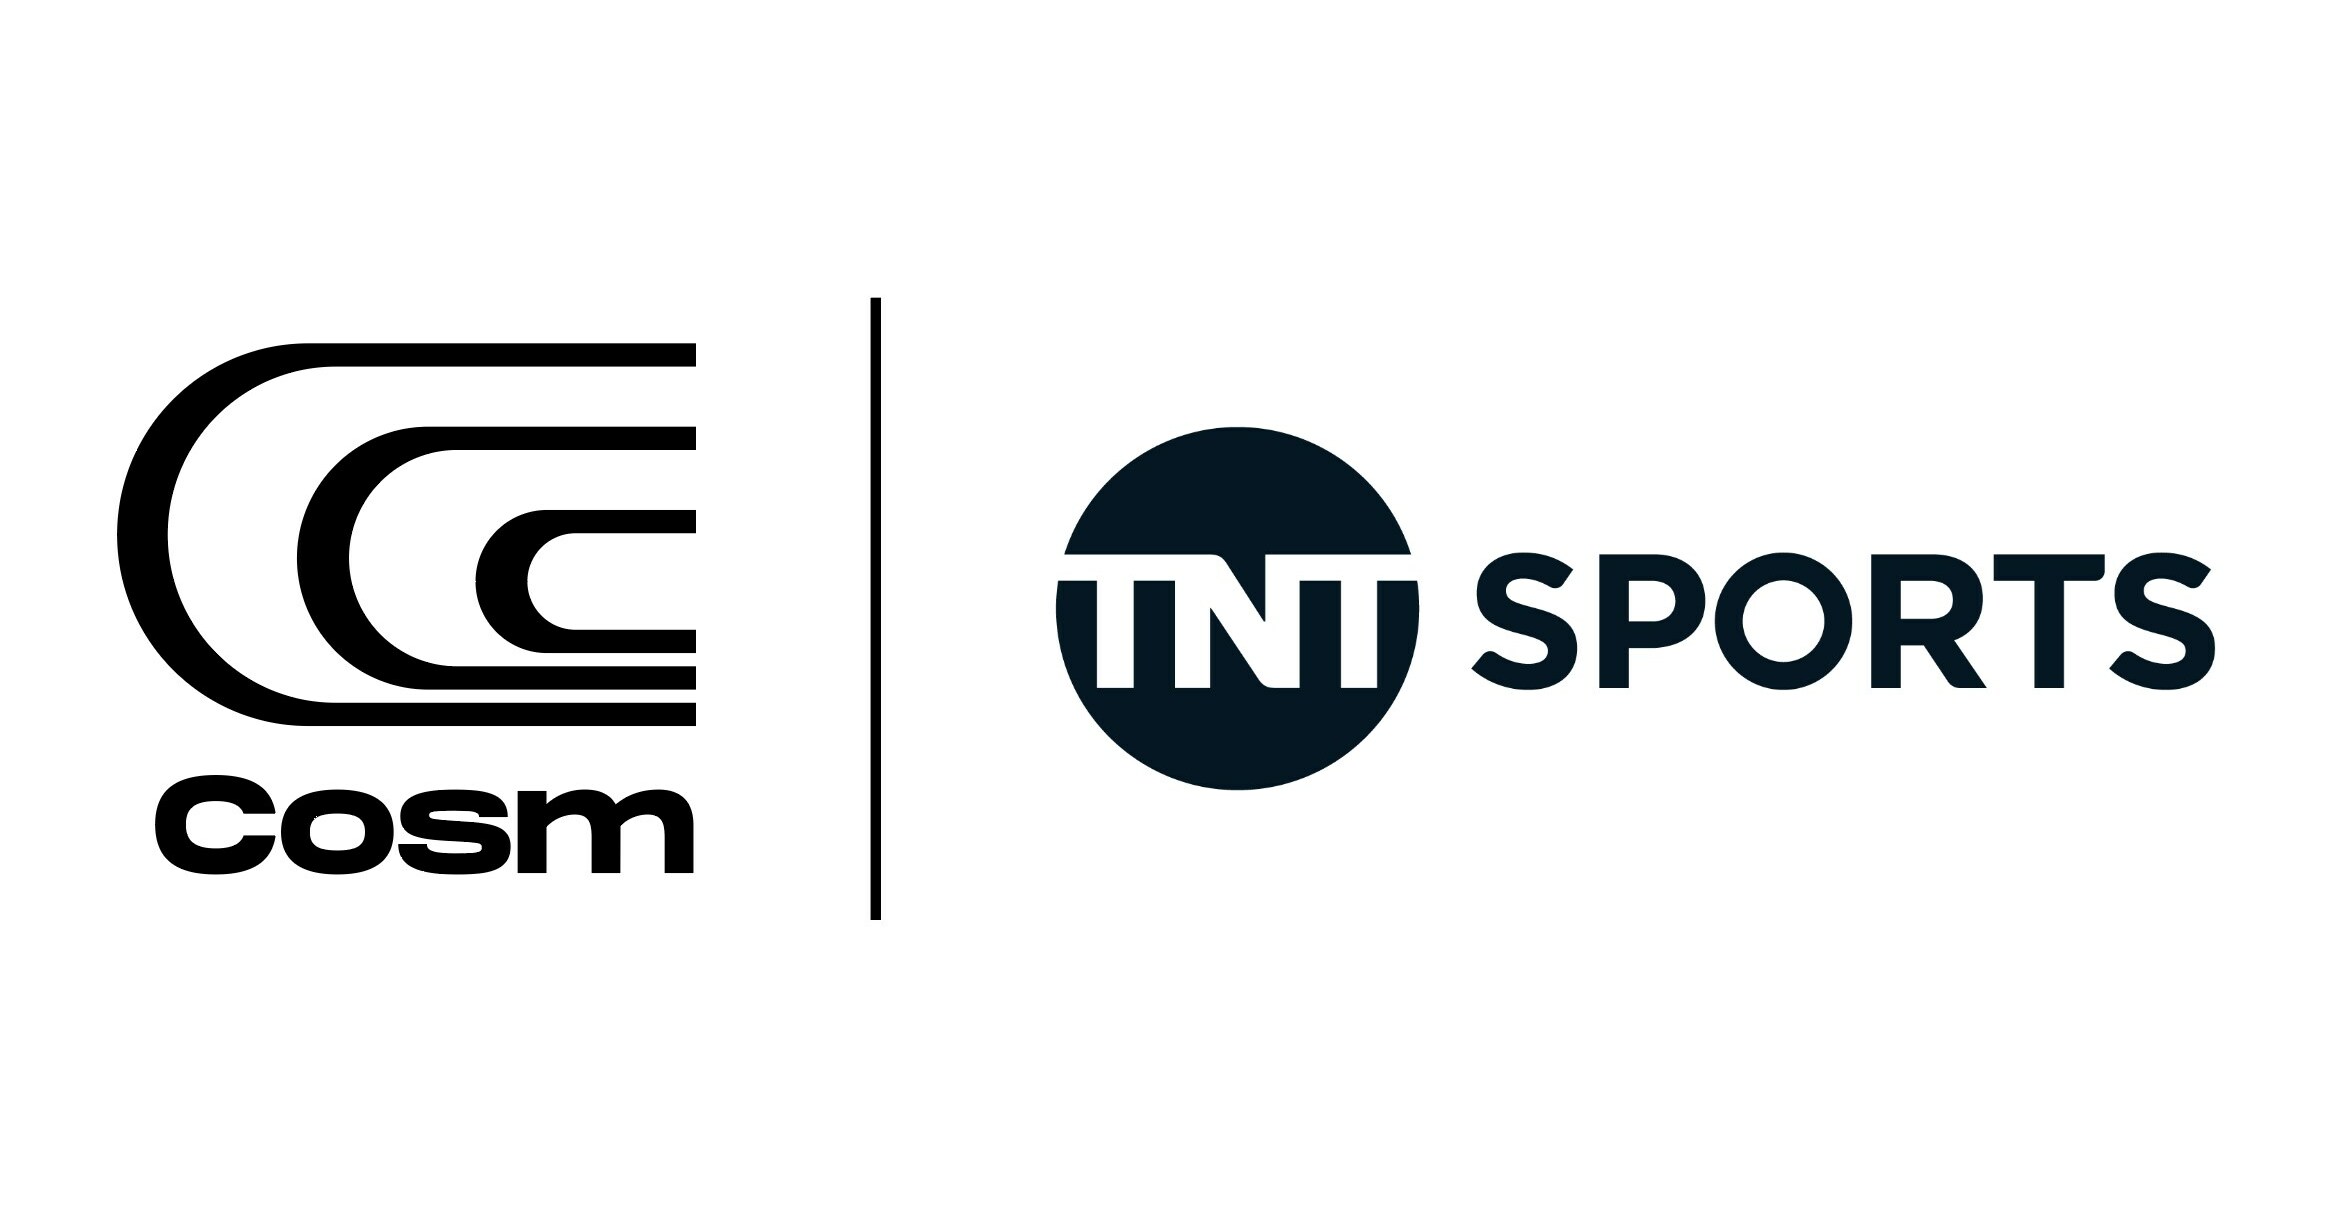 TNT Sports